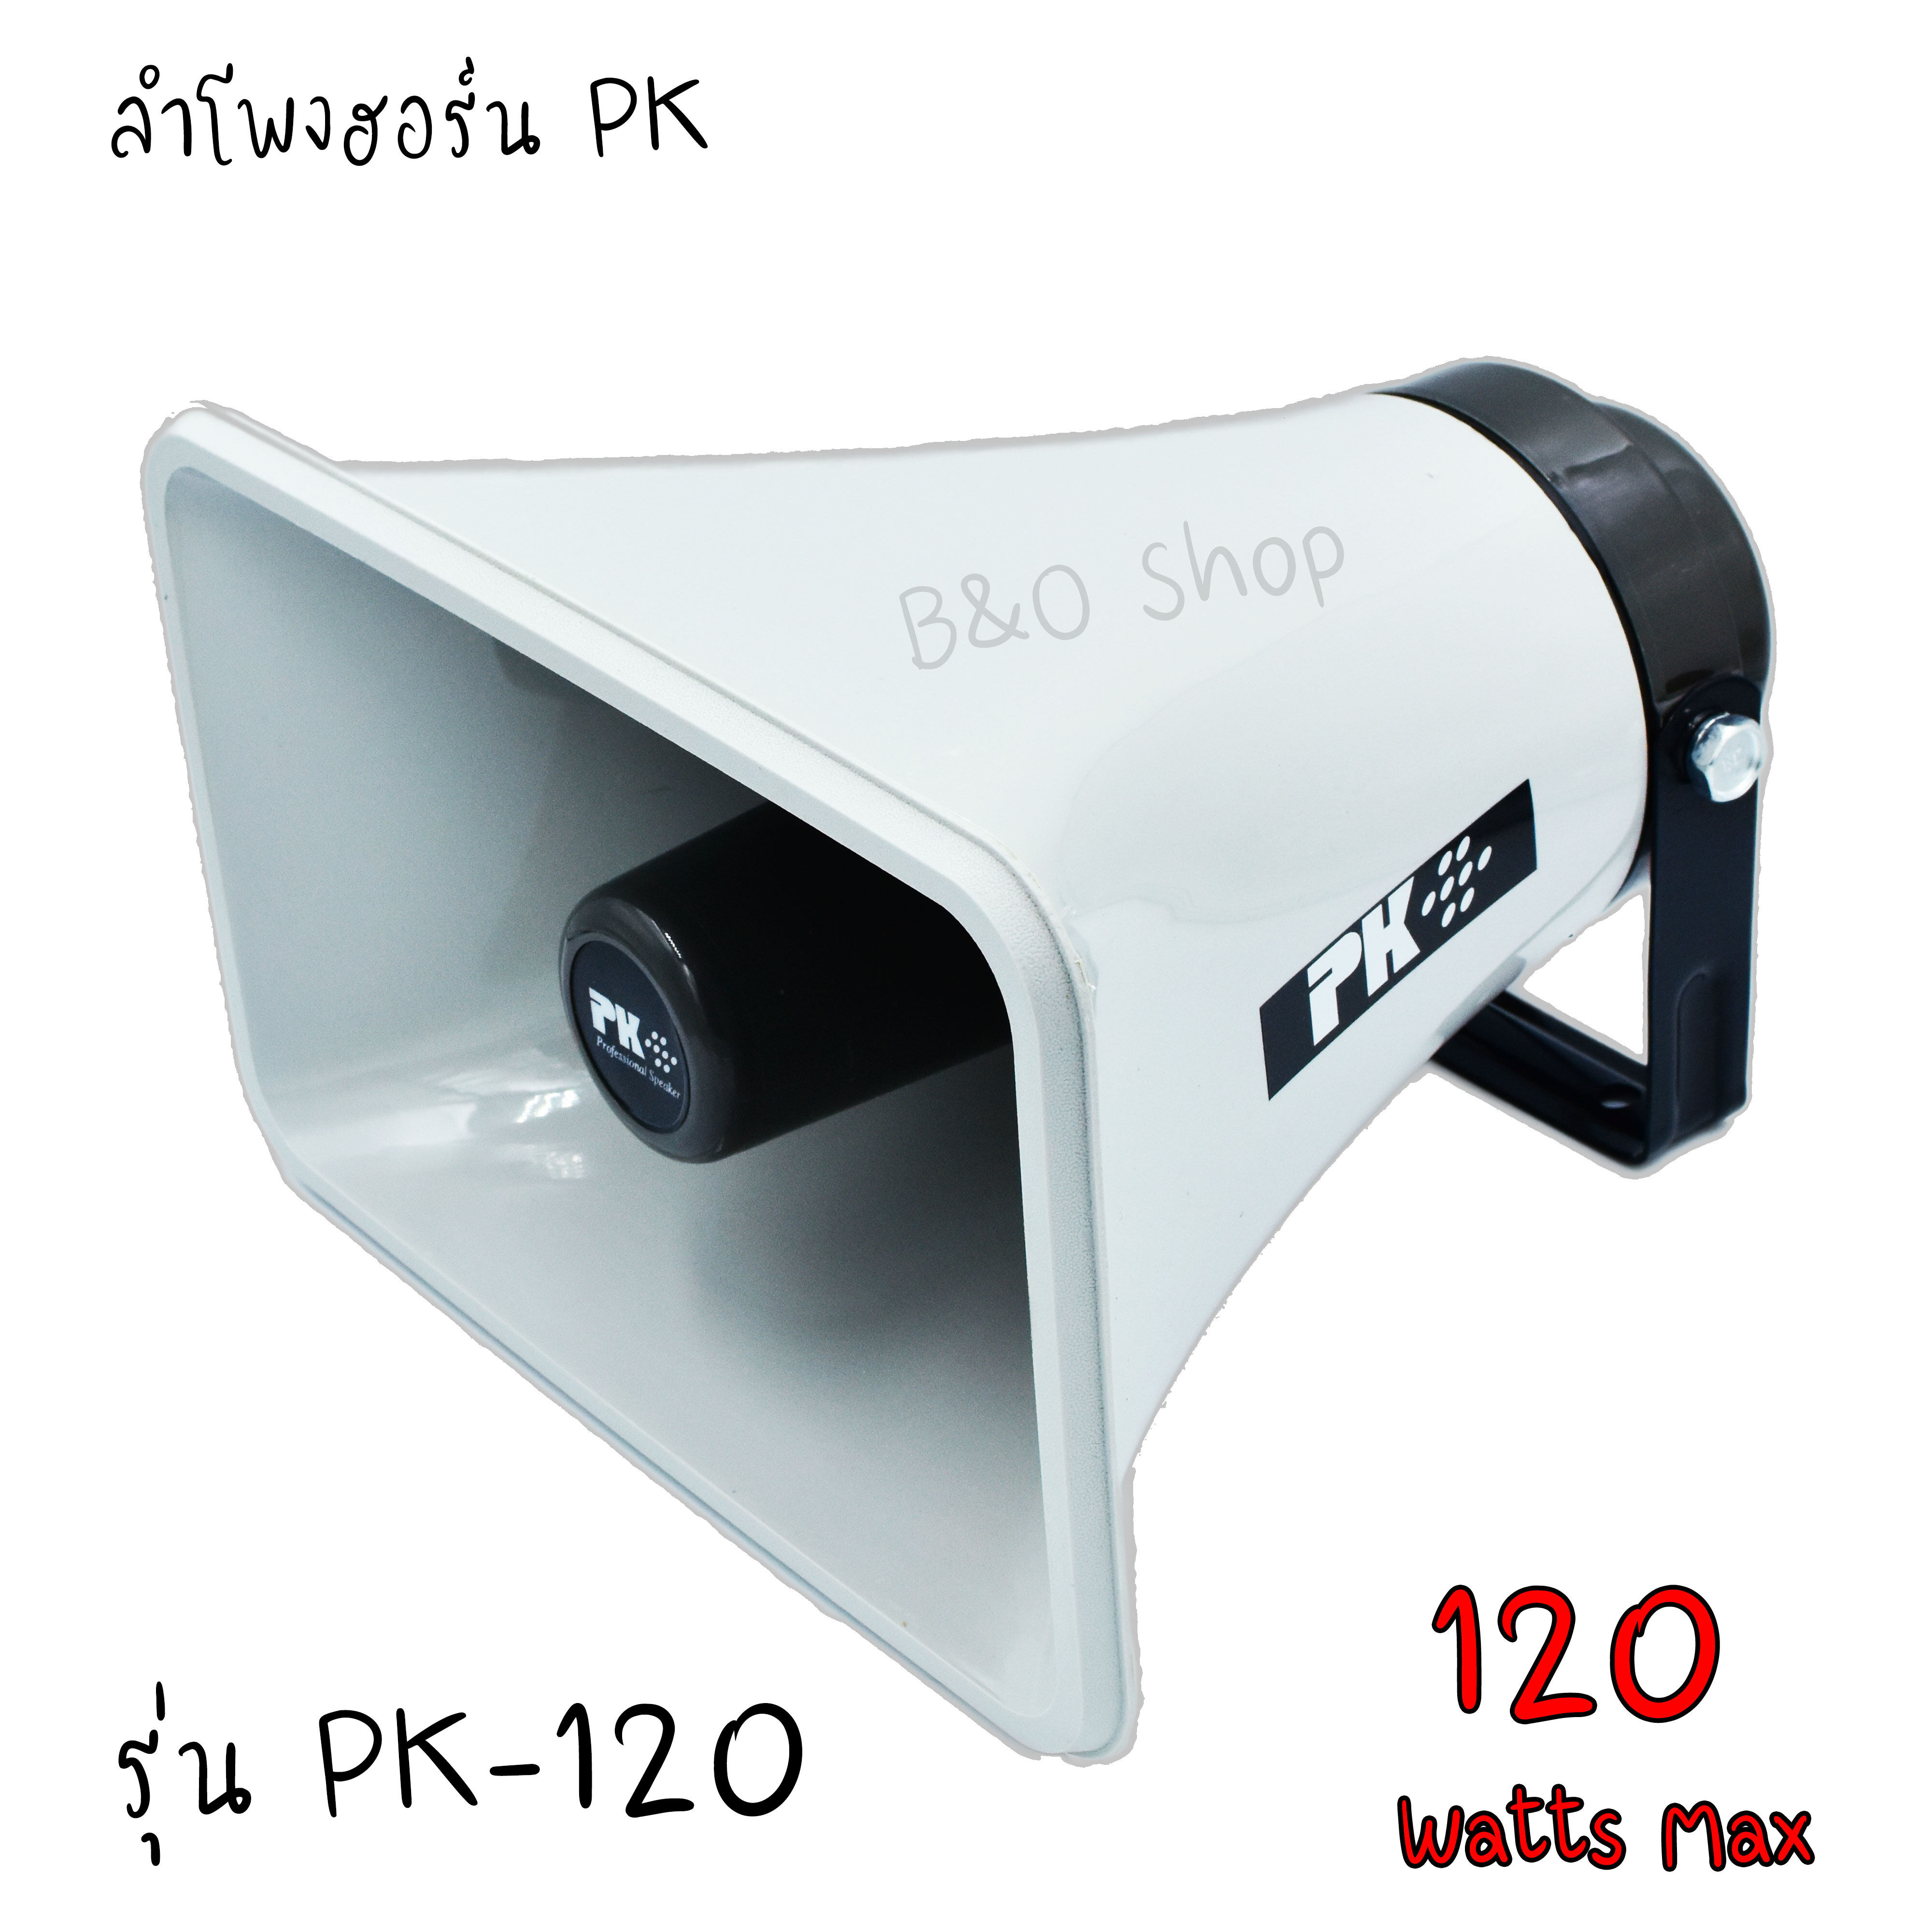 ลำโพงฮอร์น PK รุ่น PK-120 หน้ากว้าง 30x19 cm ดังเเรง พุ่งไกล  120วัตต์ จำนวน 1ตัว ของพร้อมส่ง ลำโพง ฮอร์นบ้าน เครื่องเสียงบ้าน